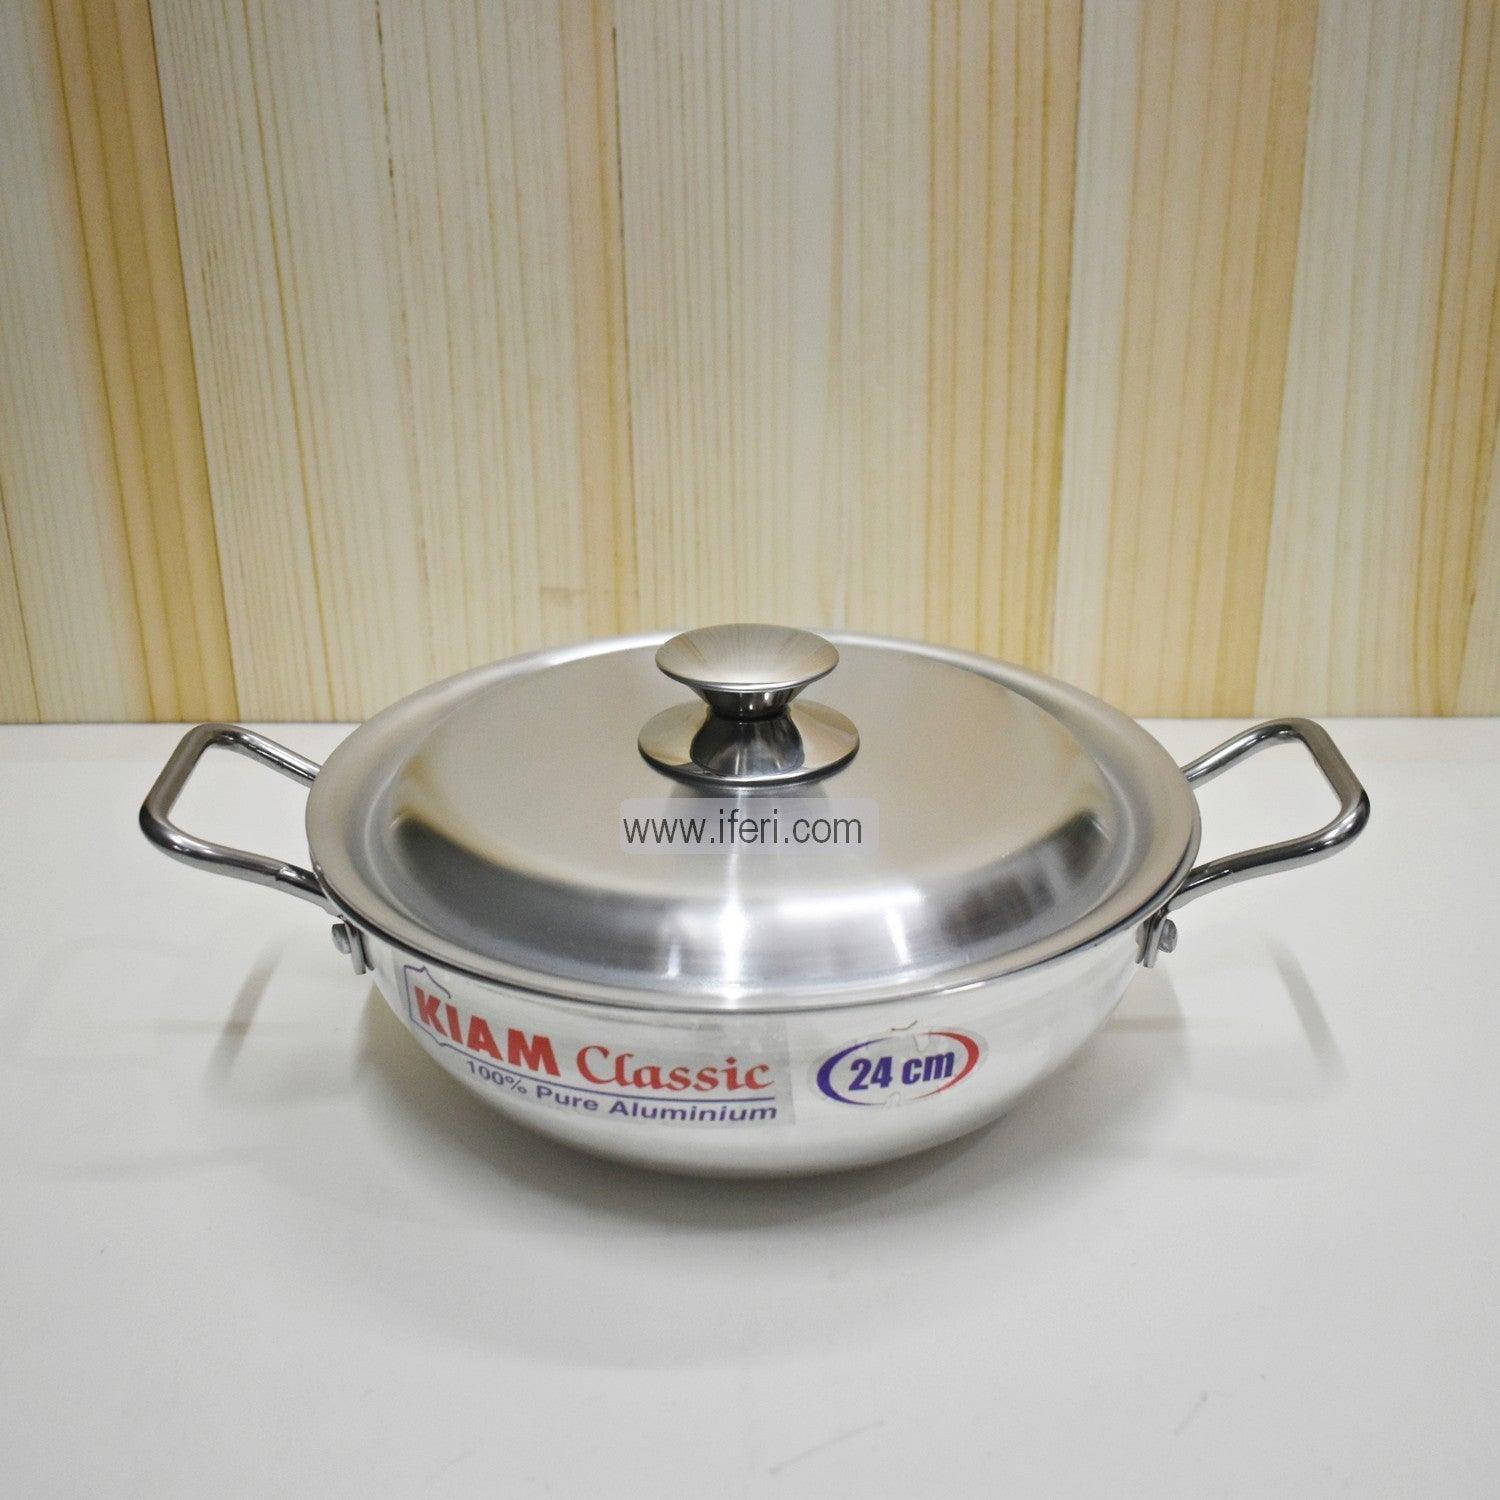 28 cm Kiam Aluminium Classic Wok Korai Cookware With Aluminium Lid BCG0219 Price in Bangladesh - iferi.com